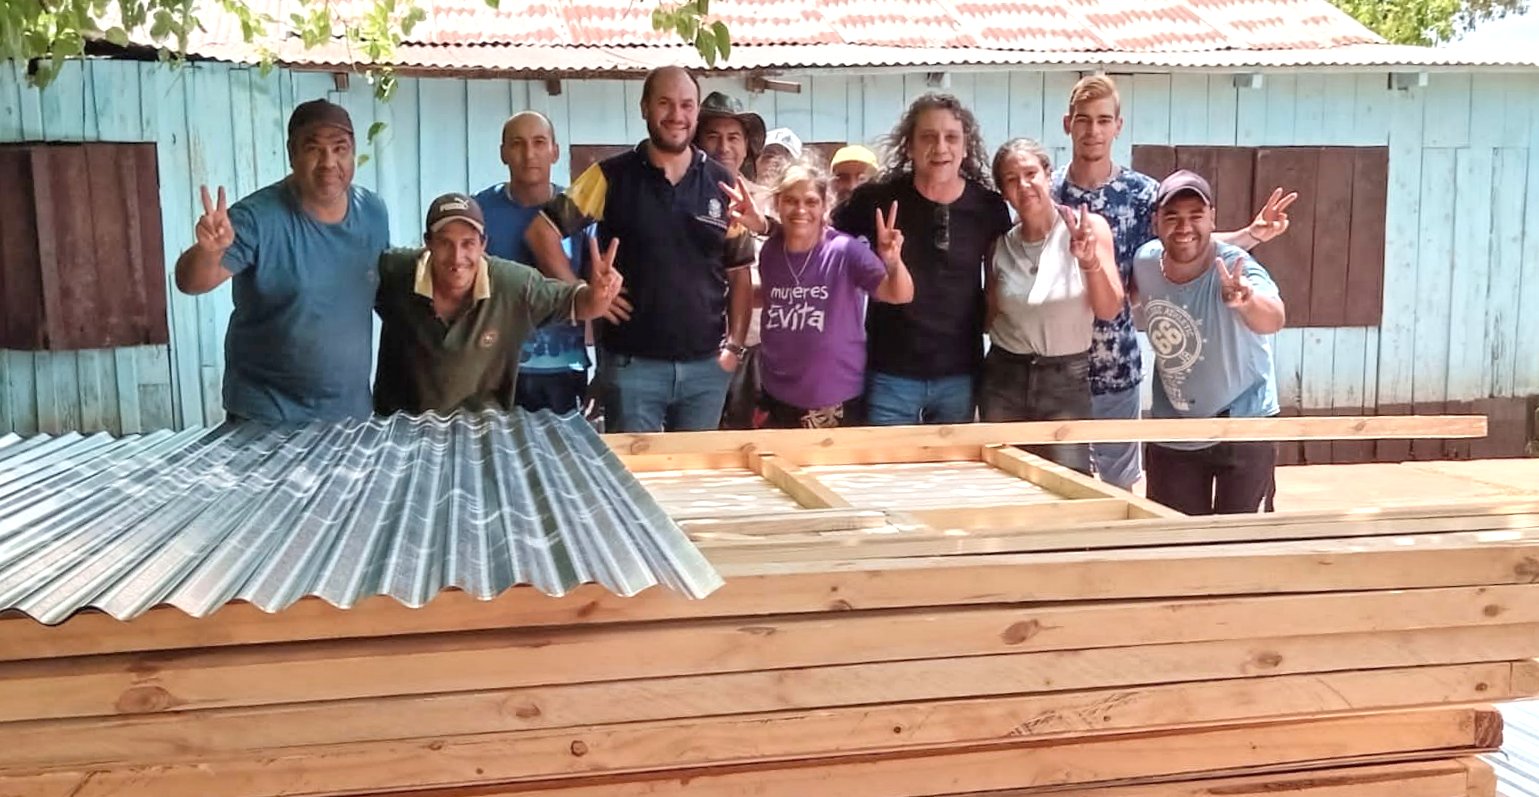 Bonpland: Trabajadoras del Movimiento Evita recibieron corte de casa y recuperarán carpintería destruida en un atentado imagen-1